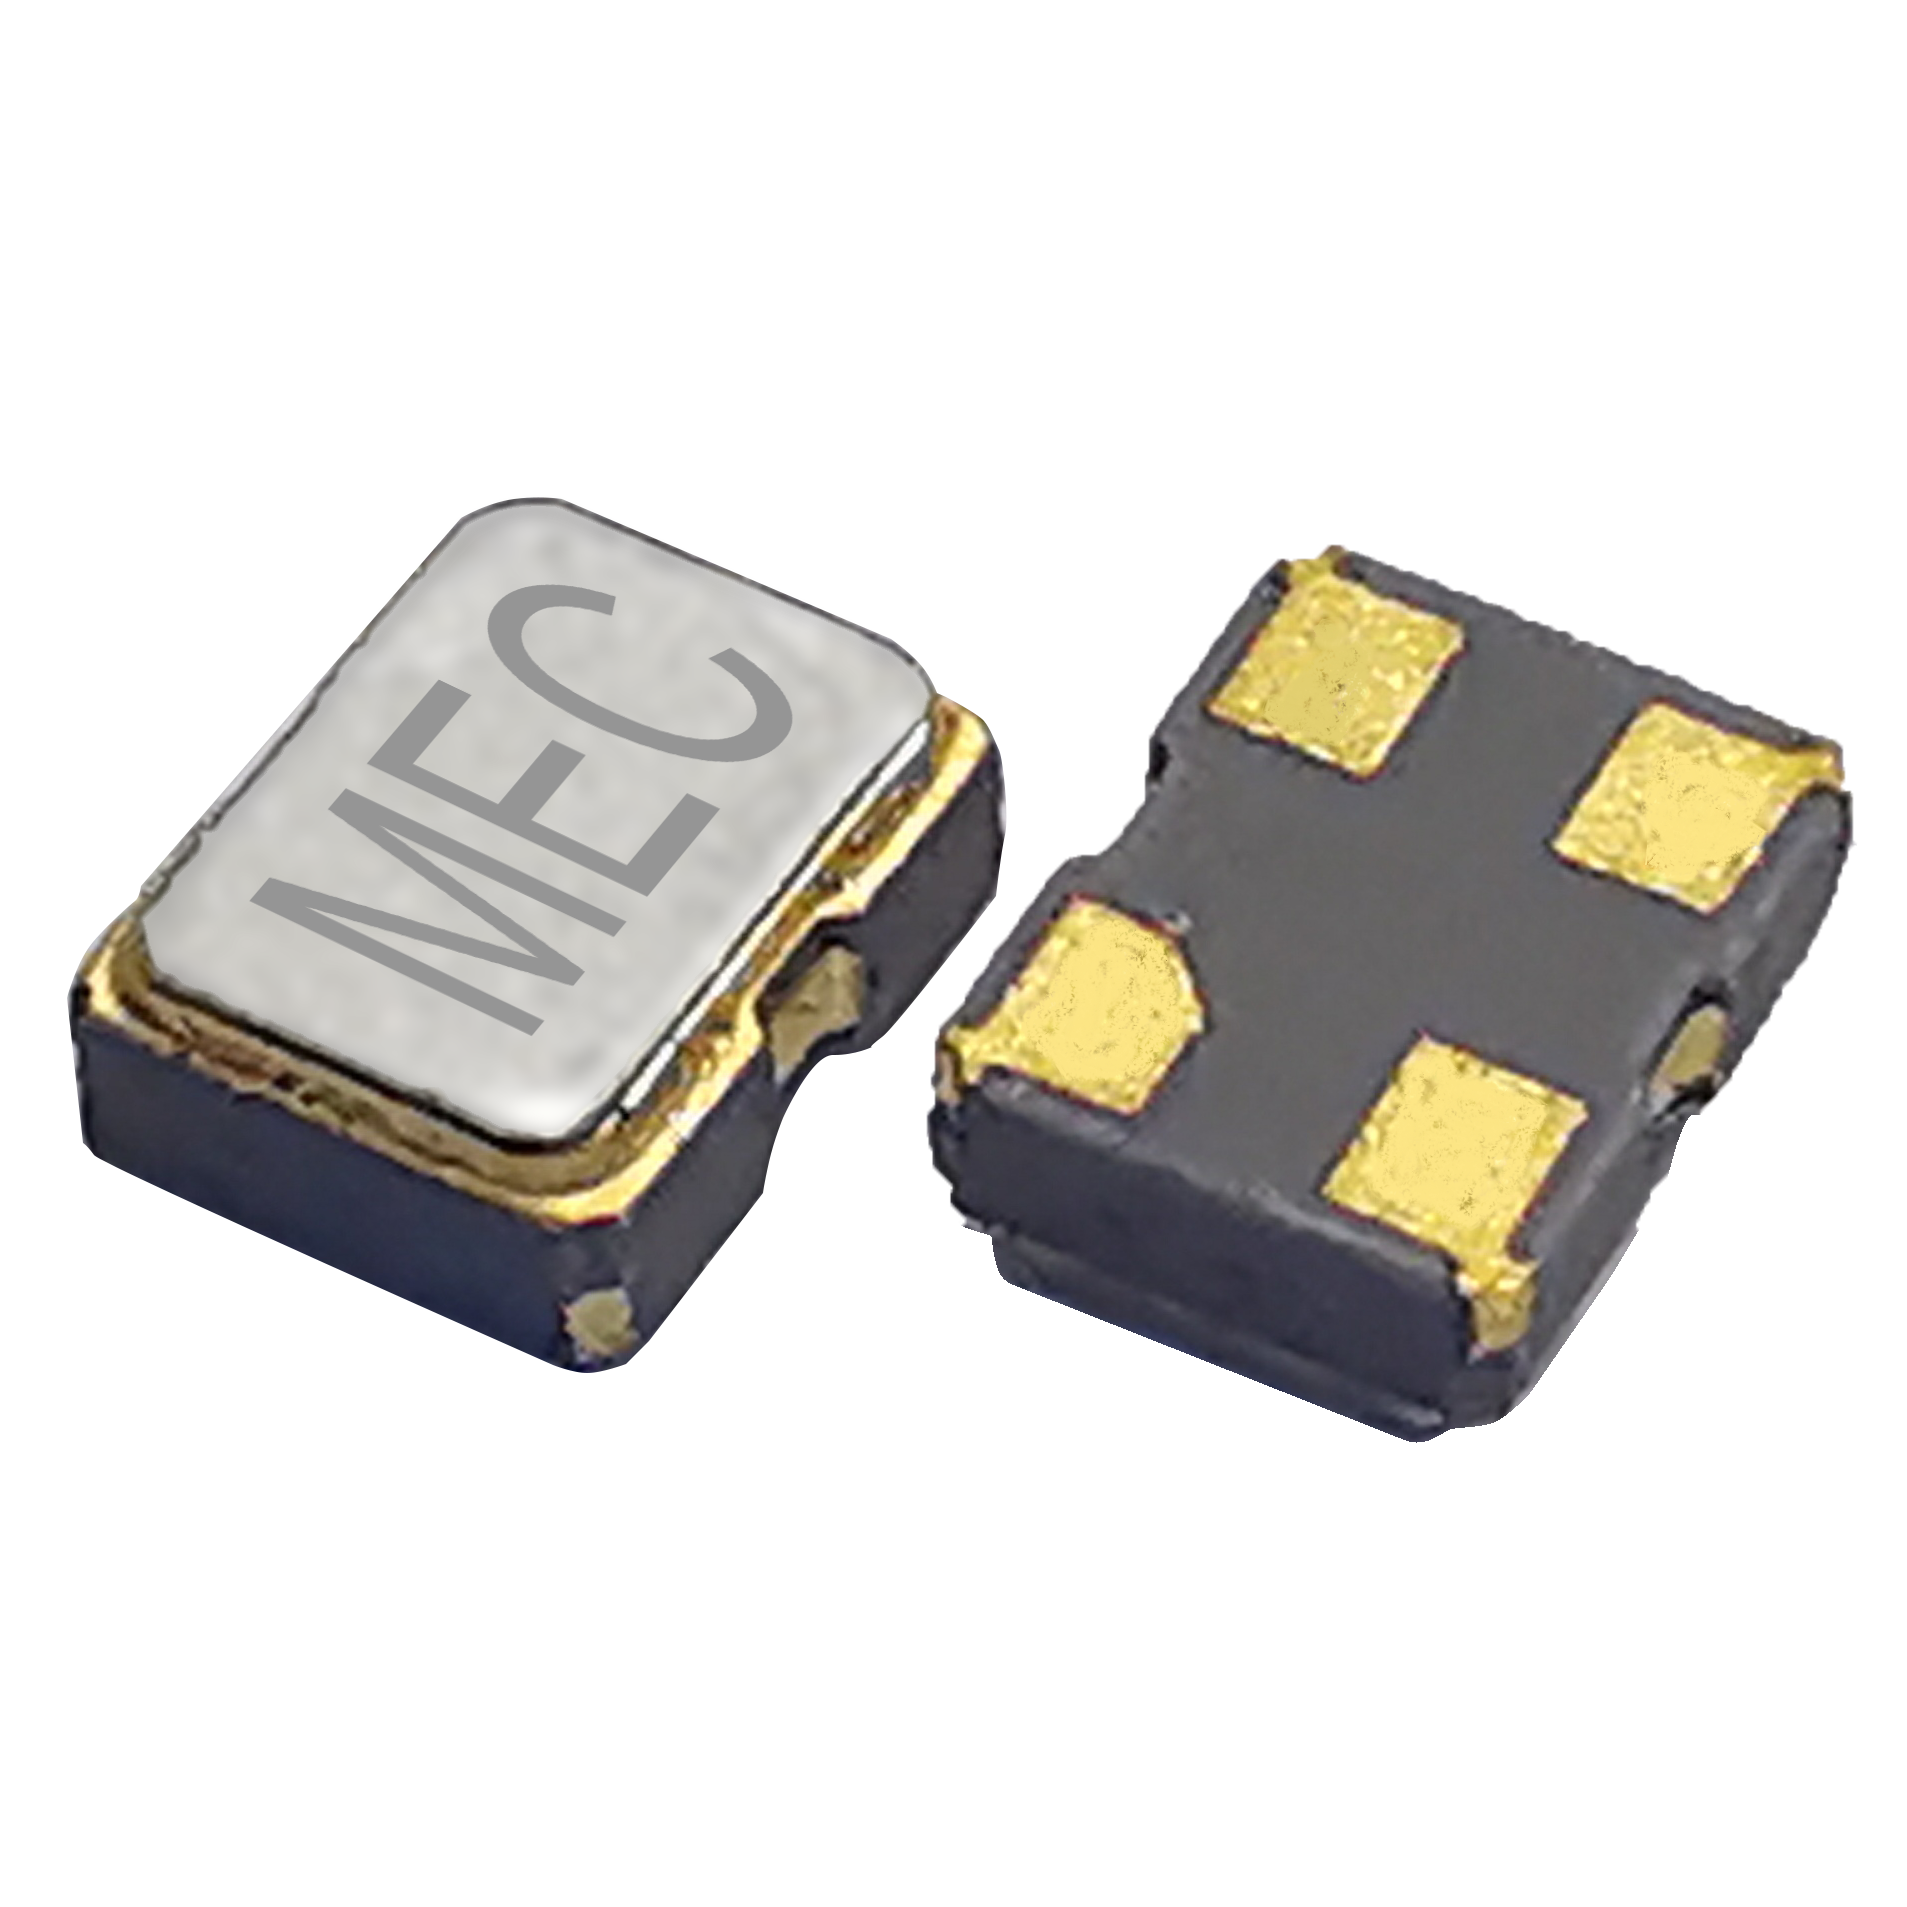 H21 2016 3.3V CMOS SMD Crystal Oscillator